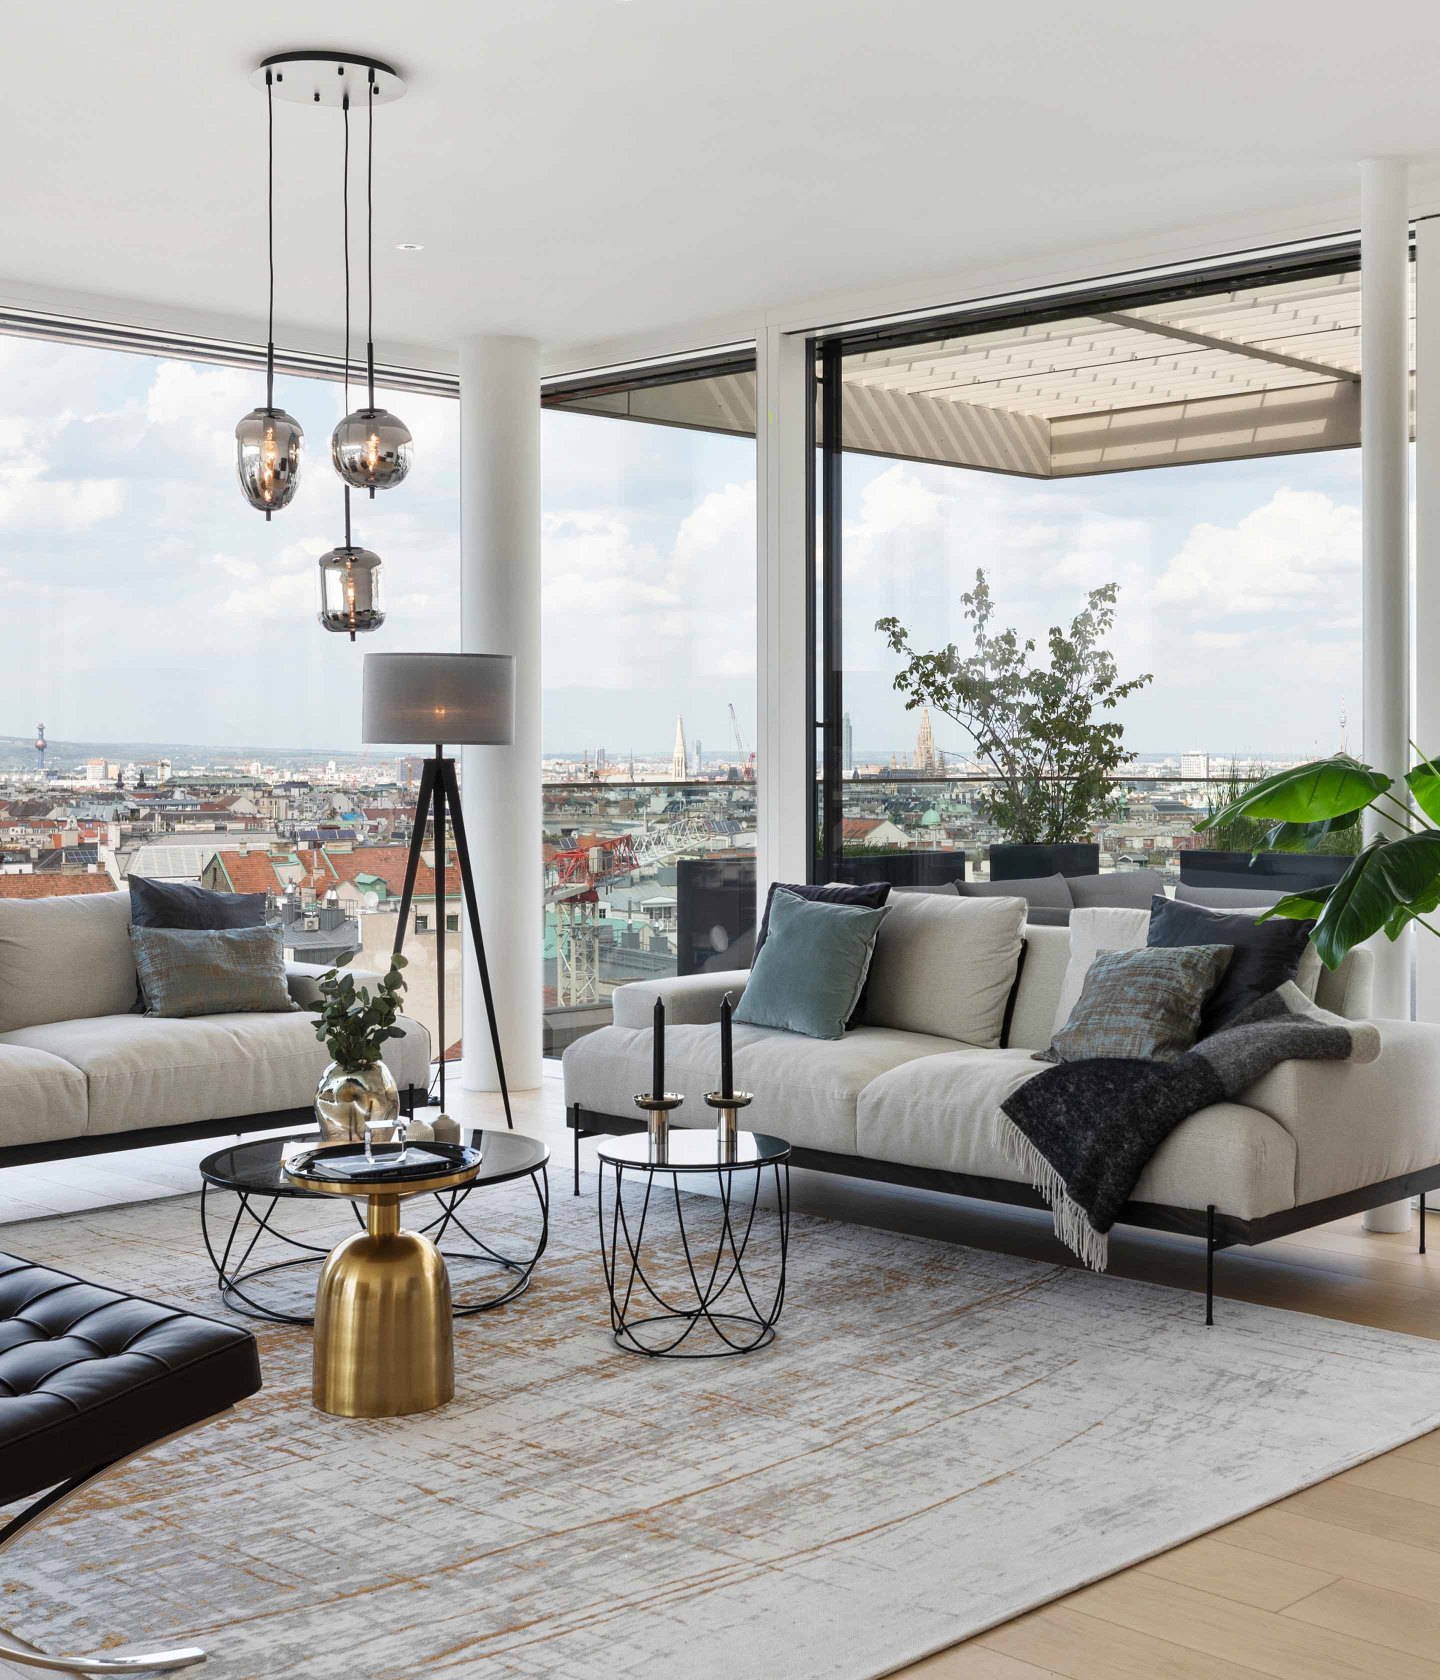 Foto: Innenansicht Penthouse in der Lindengasse mit Blick auf Wien